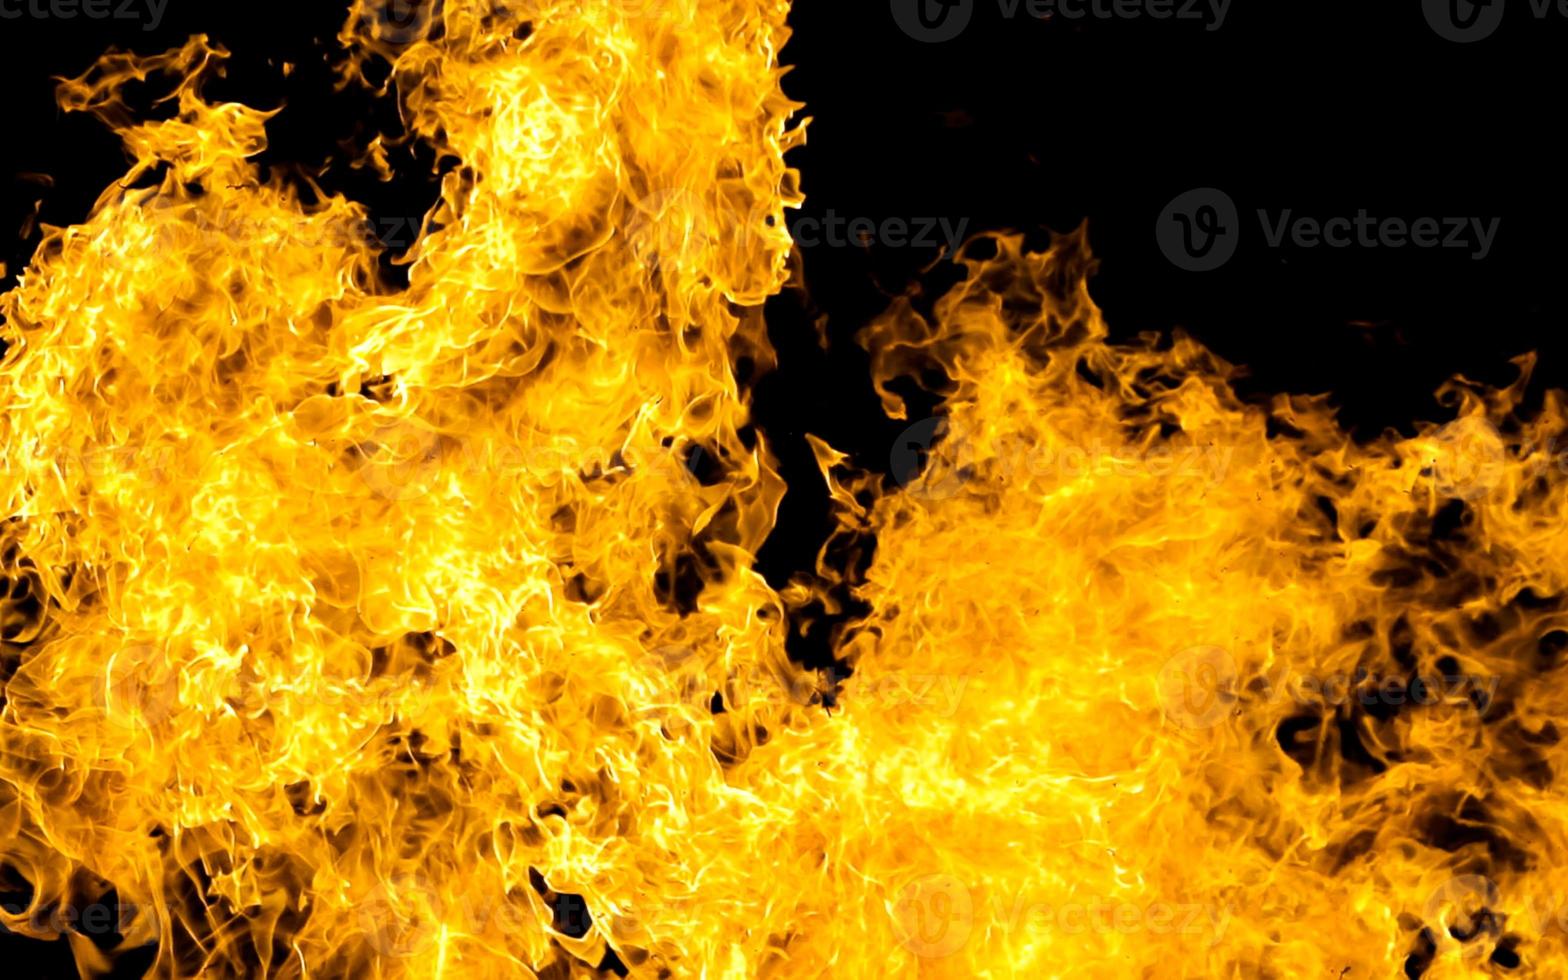 Feuer Flamme isolieren auf schwarz Hintergrund. brennen Flammen, abstrakt Textur. Kunst Design zum Feuer Muster, Flamme Textur. foto